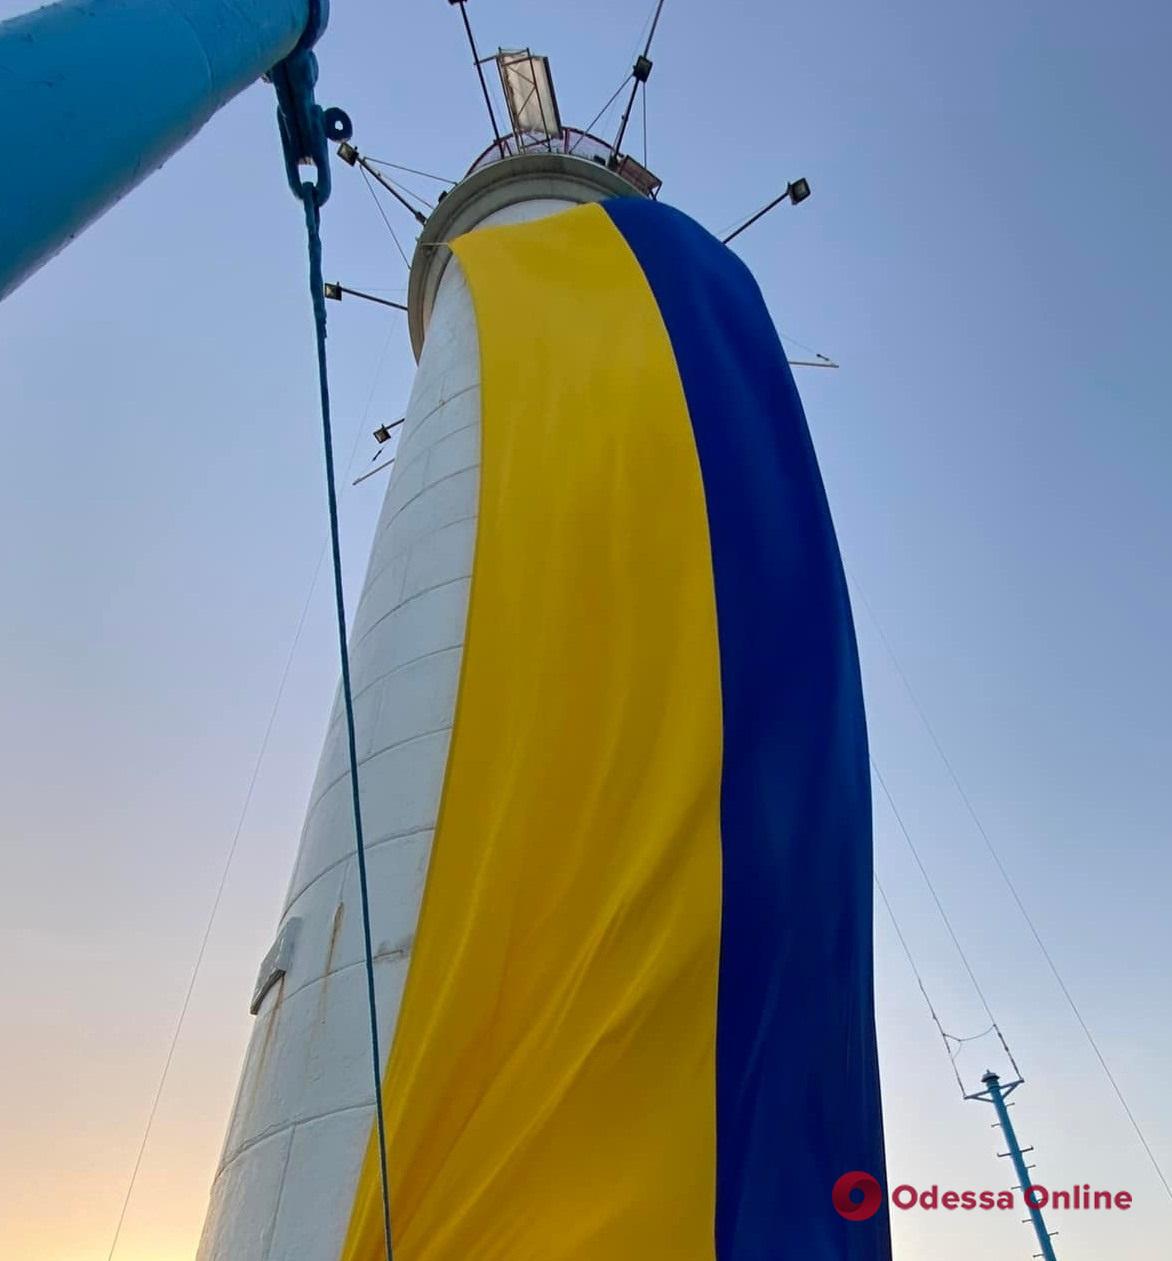 Одесса: на Воронцовском маяке развернули 18-метровый флаг Украины